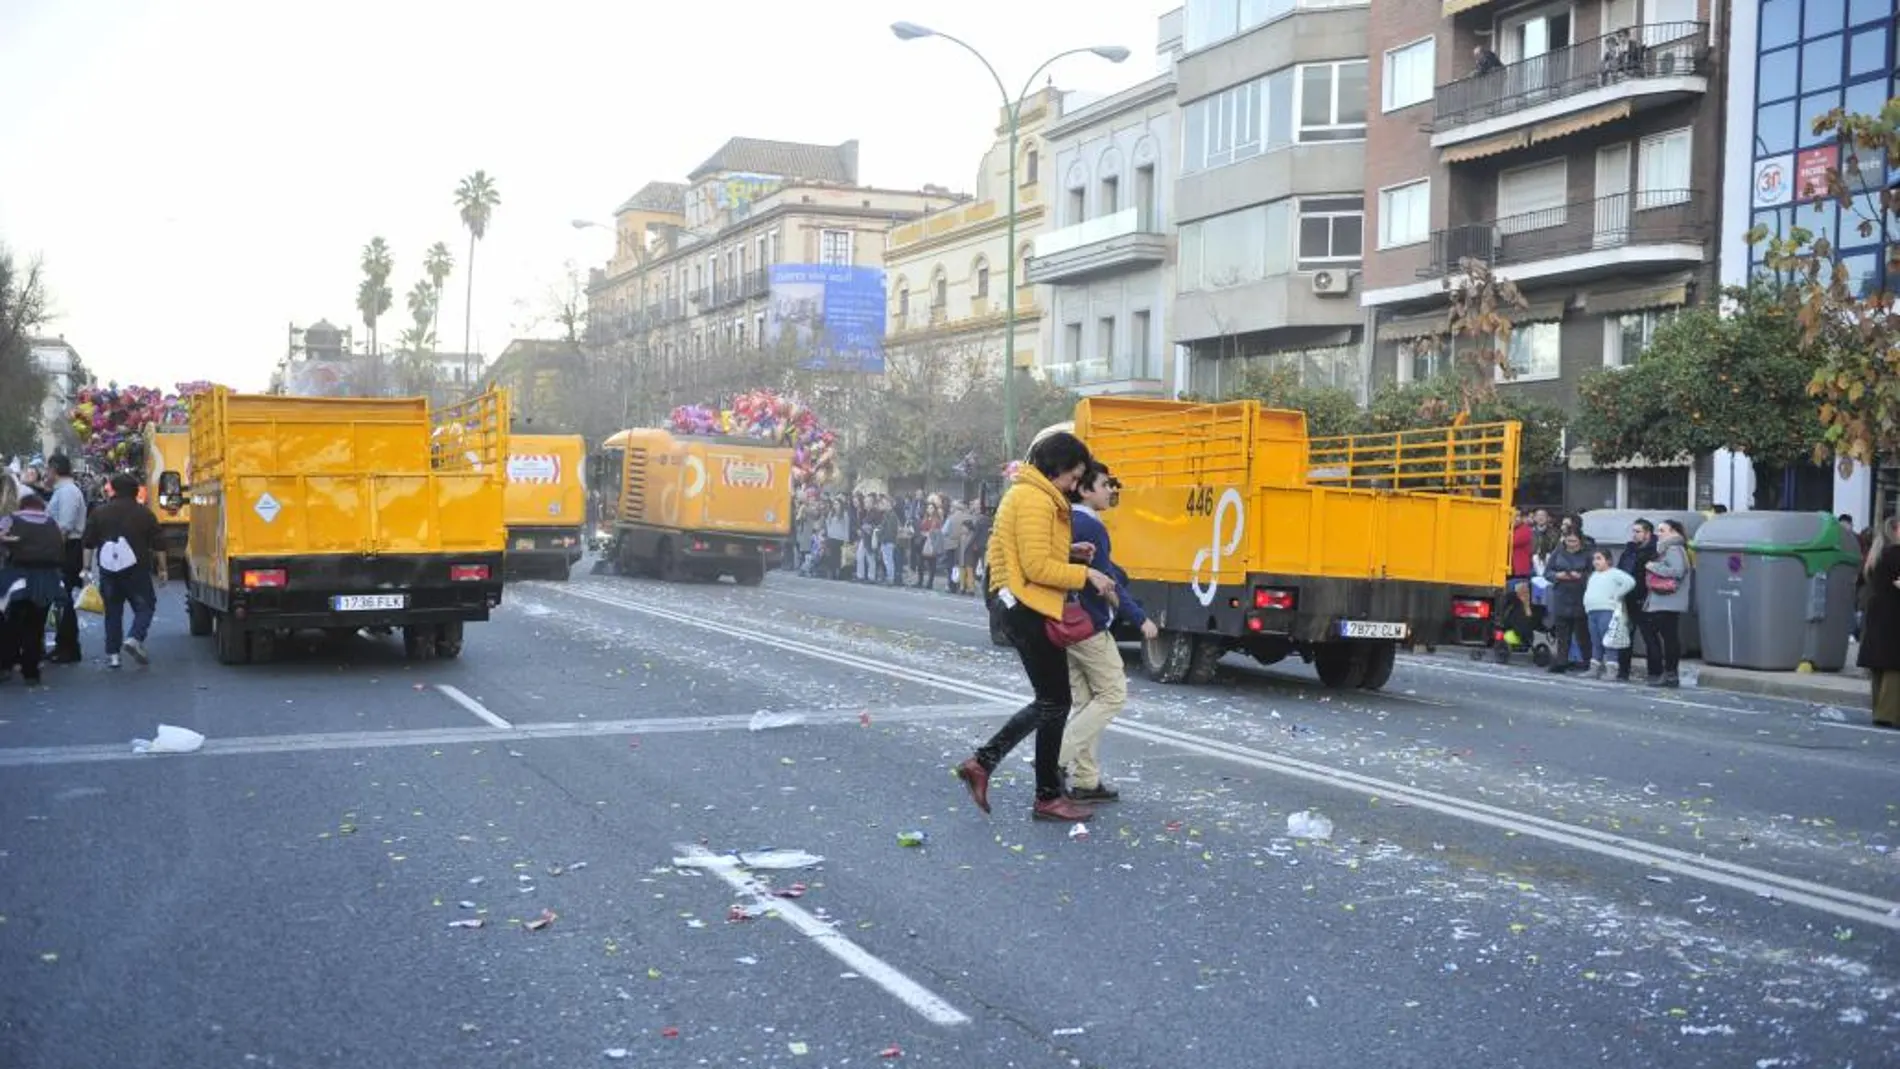 Los comerciantes del centro de Sevilla critican el “mal estado y suciedad” de las calles